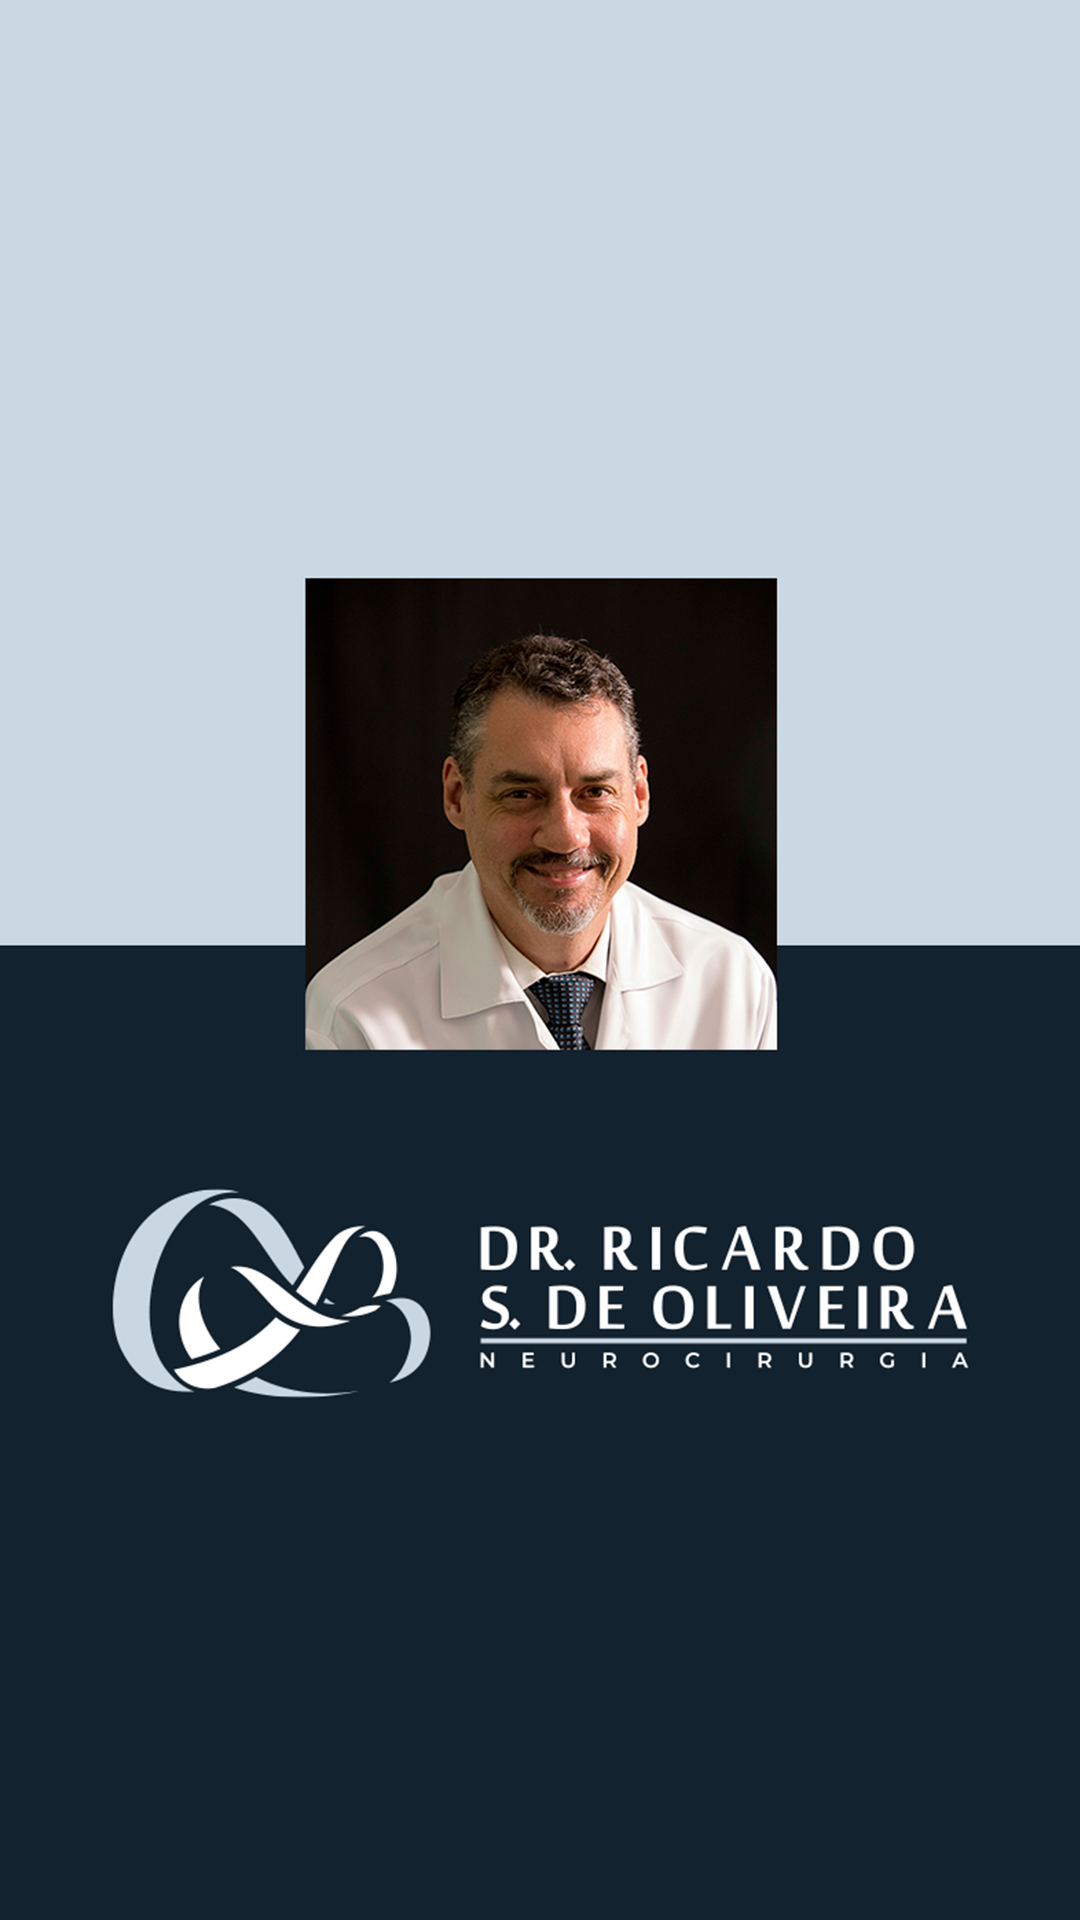 Dr. Ricardo S. de Oliveira